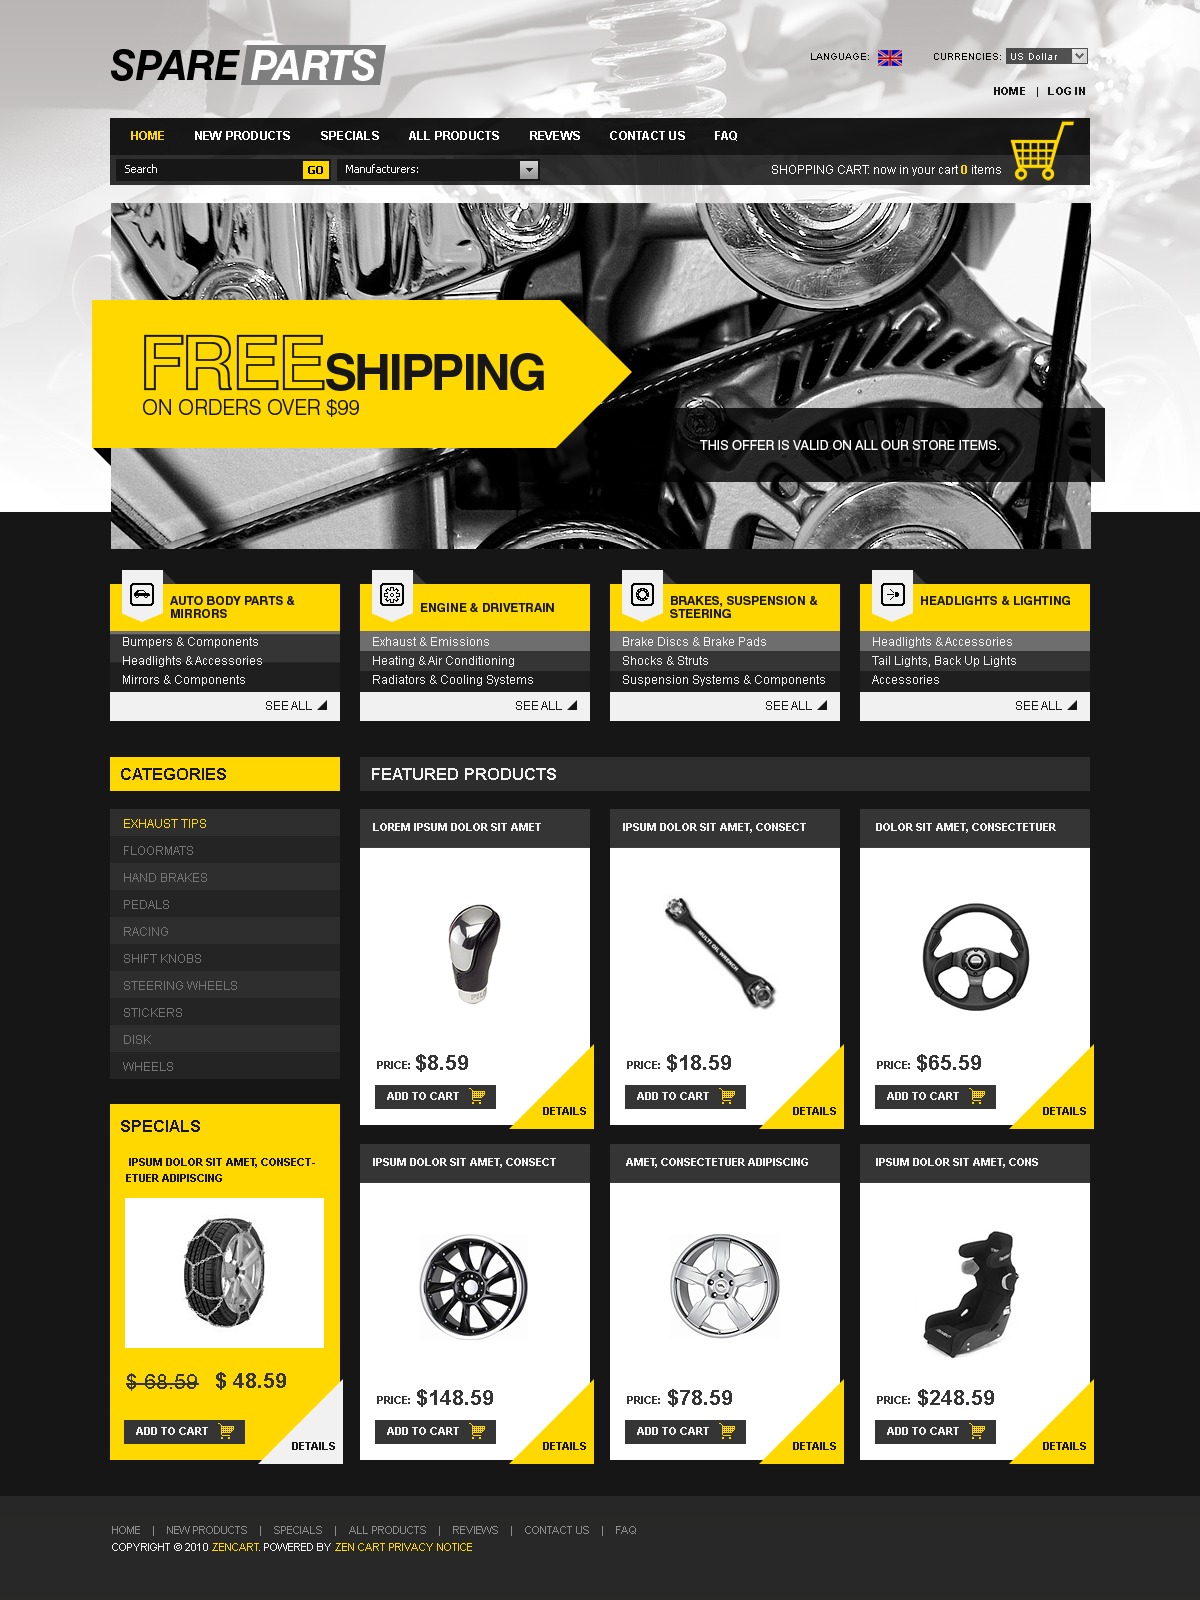 thiết kế website cho doanh nghiệp phụ tùng ô tô